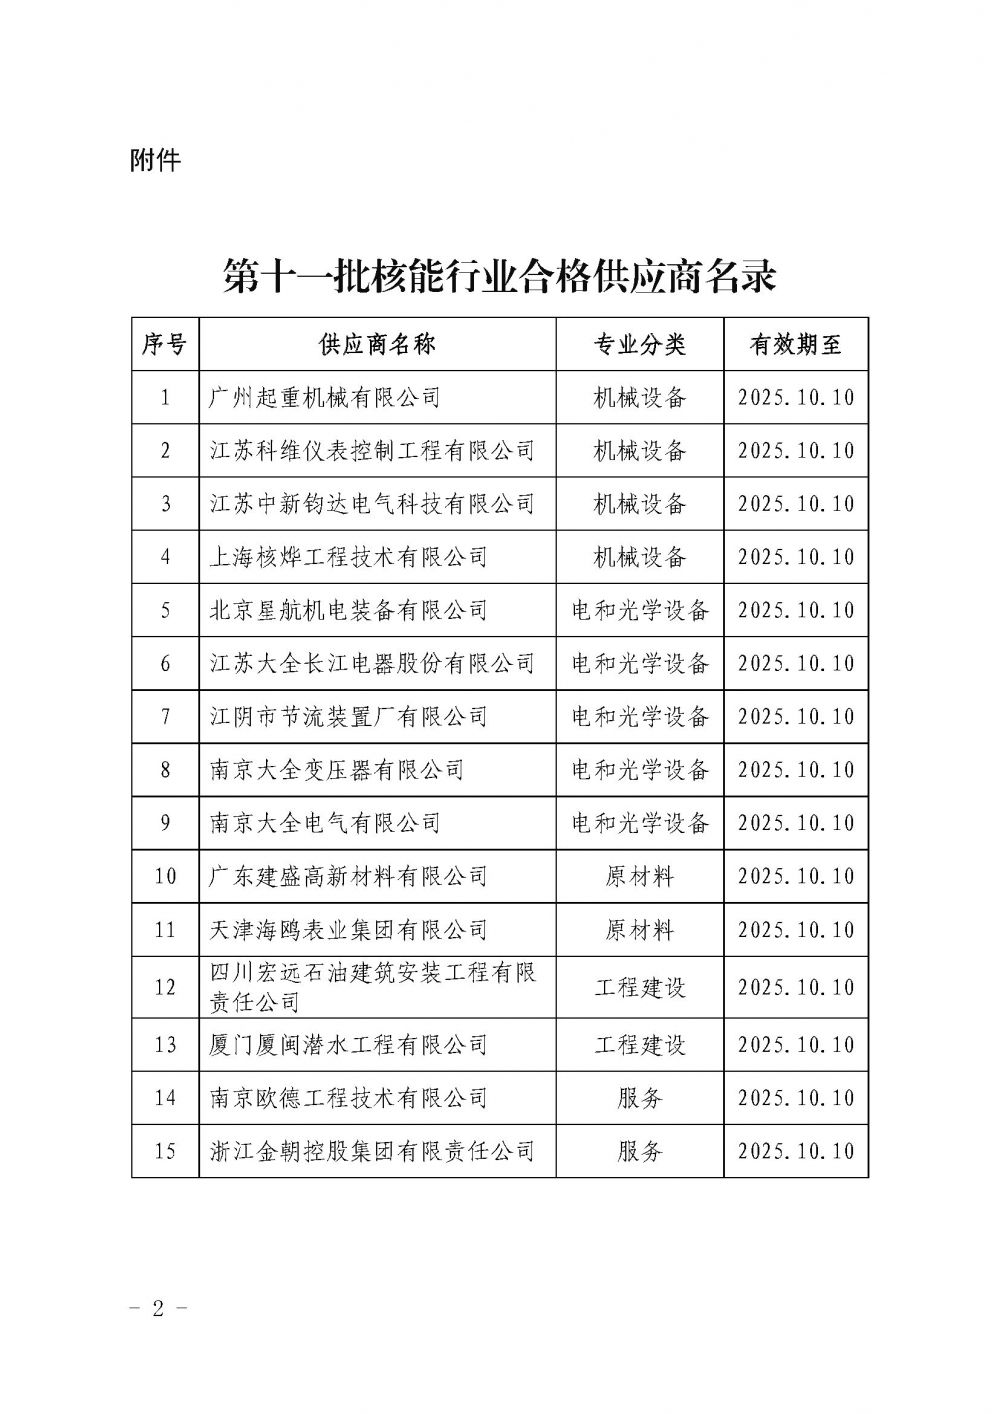 关于发布中国核能行业协会核能行业第十一批合格供应商名录的公告_页面_2.jpg